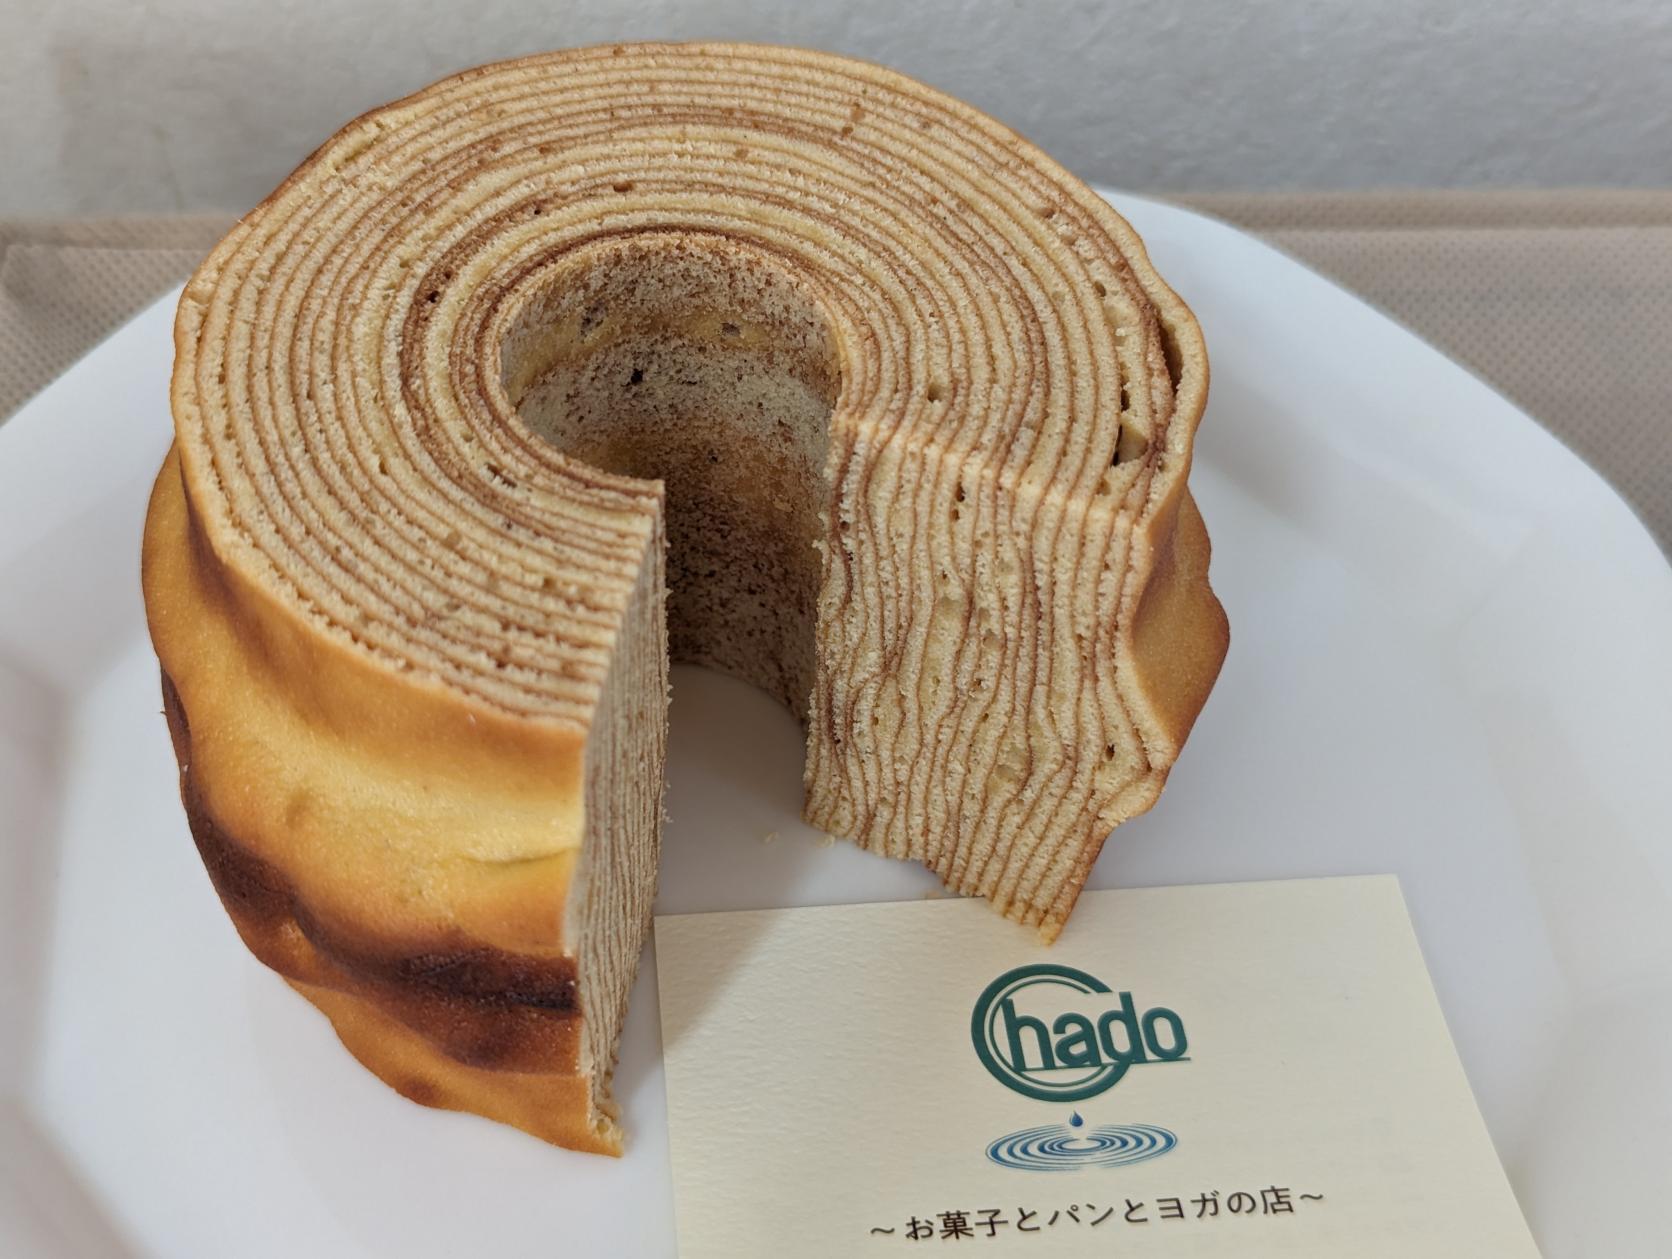 『Chado』〜お菓子とパンとヨガの店〜/本格バウムクーヘン-0